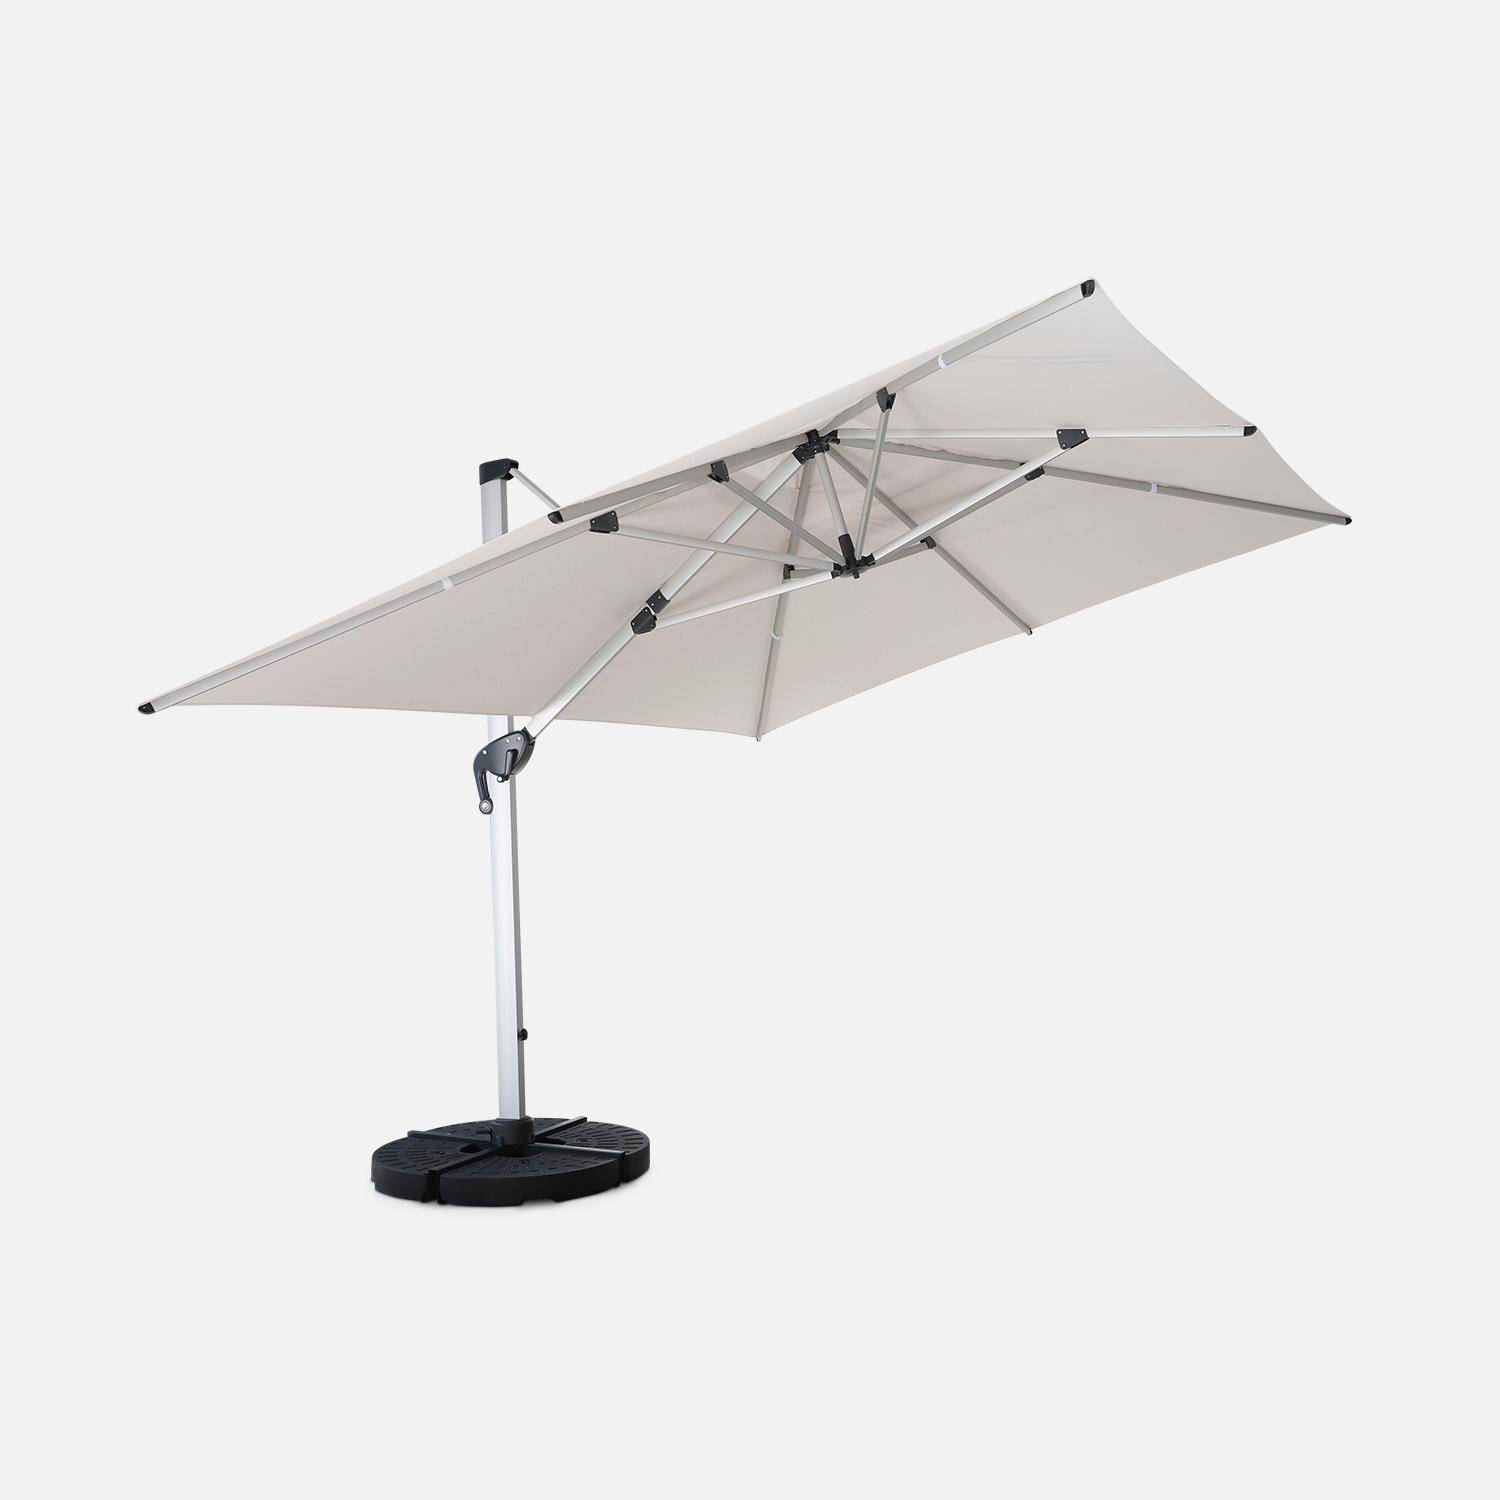 Topkwaliteit parasol, 3x4m, beige polyester doek, geanodiseerd aluminium frame, hoes inbegrepen Photo3